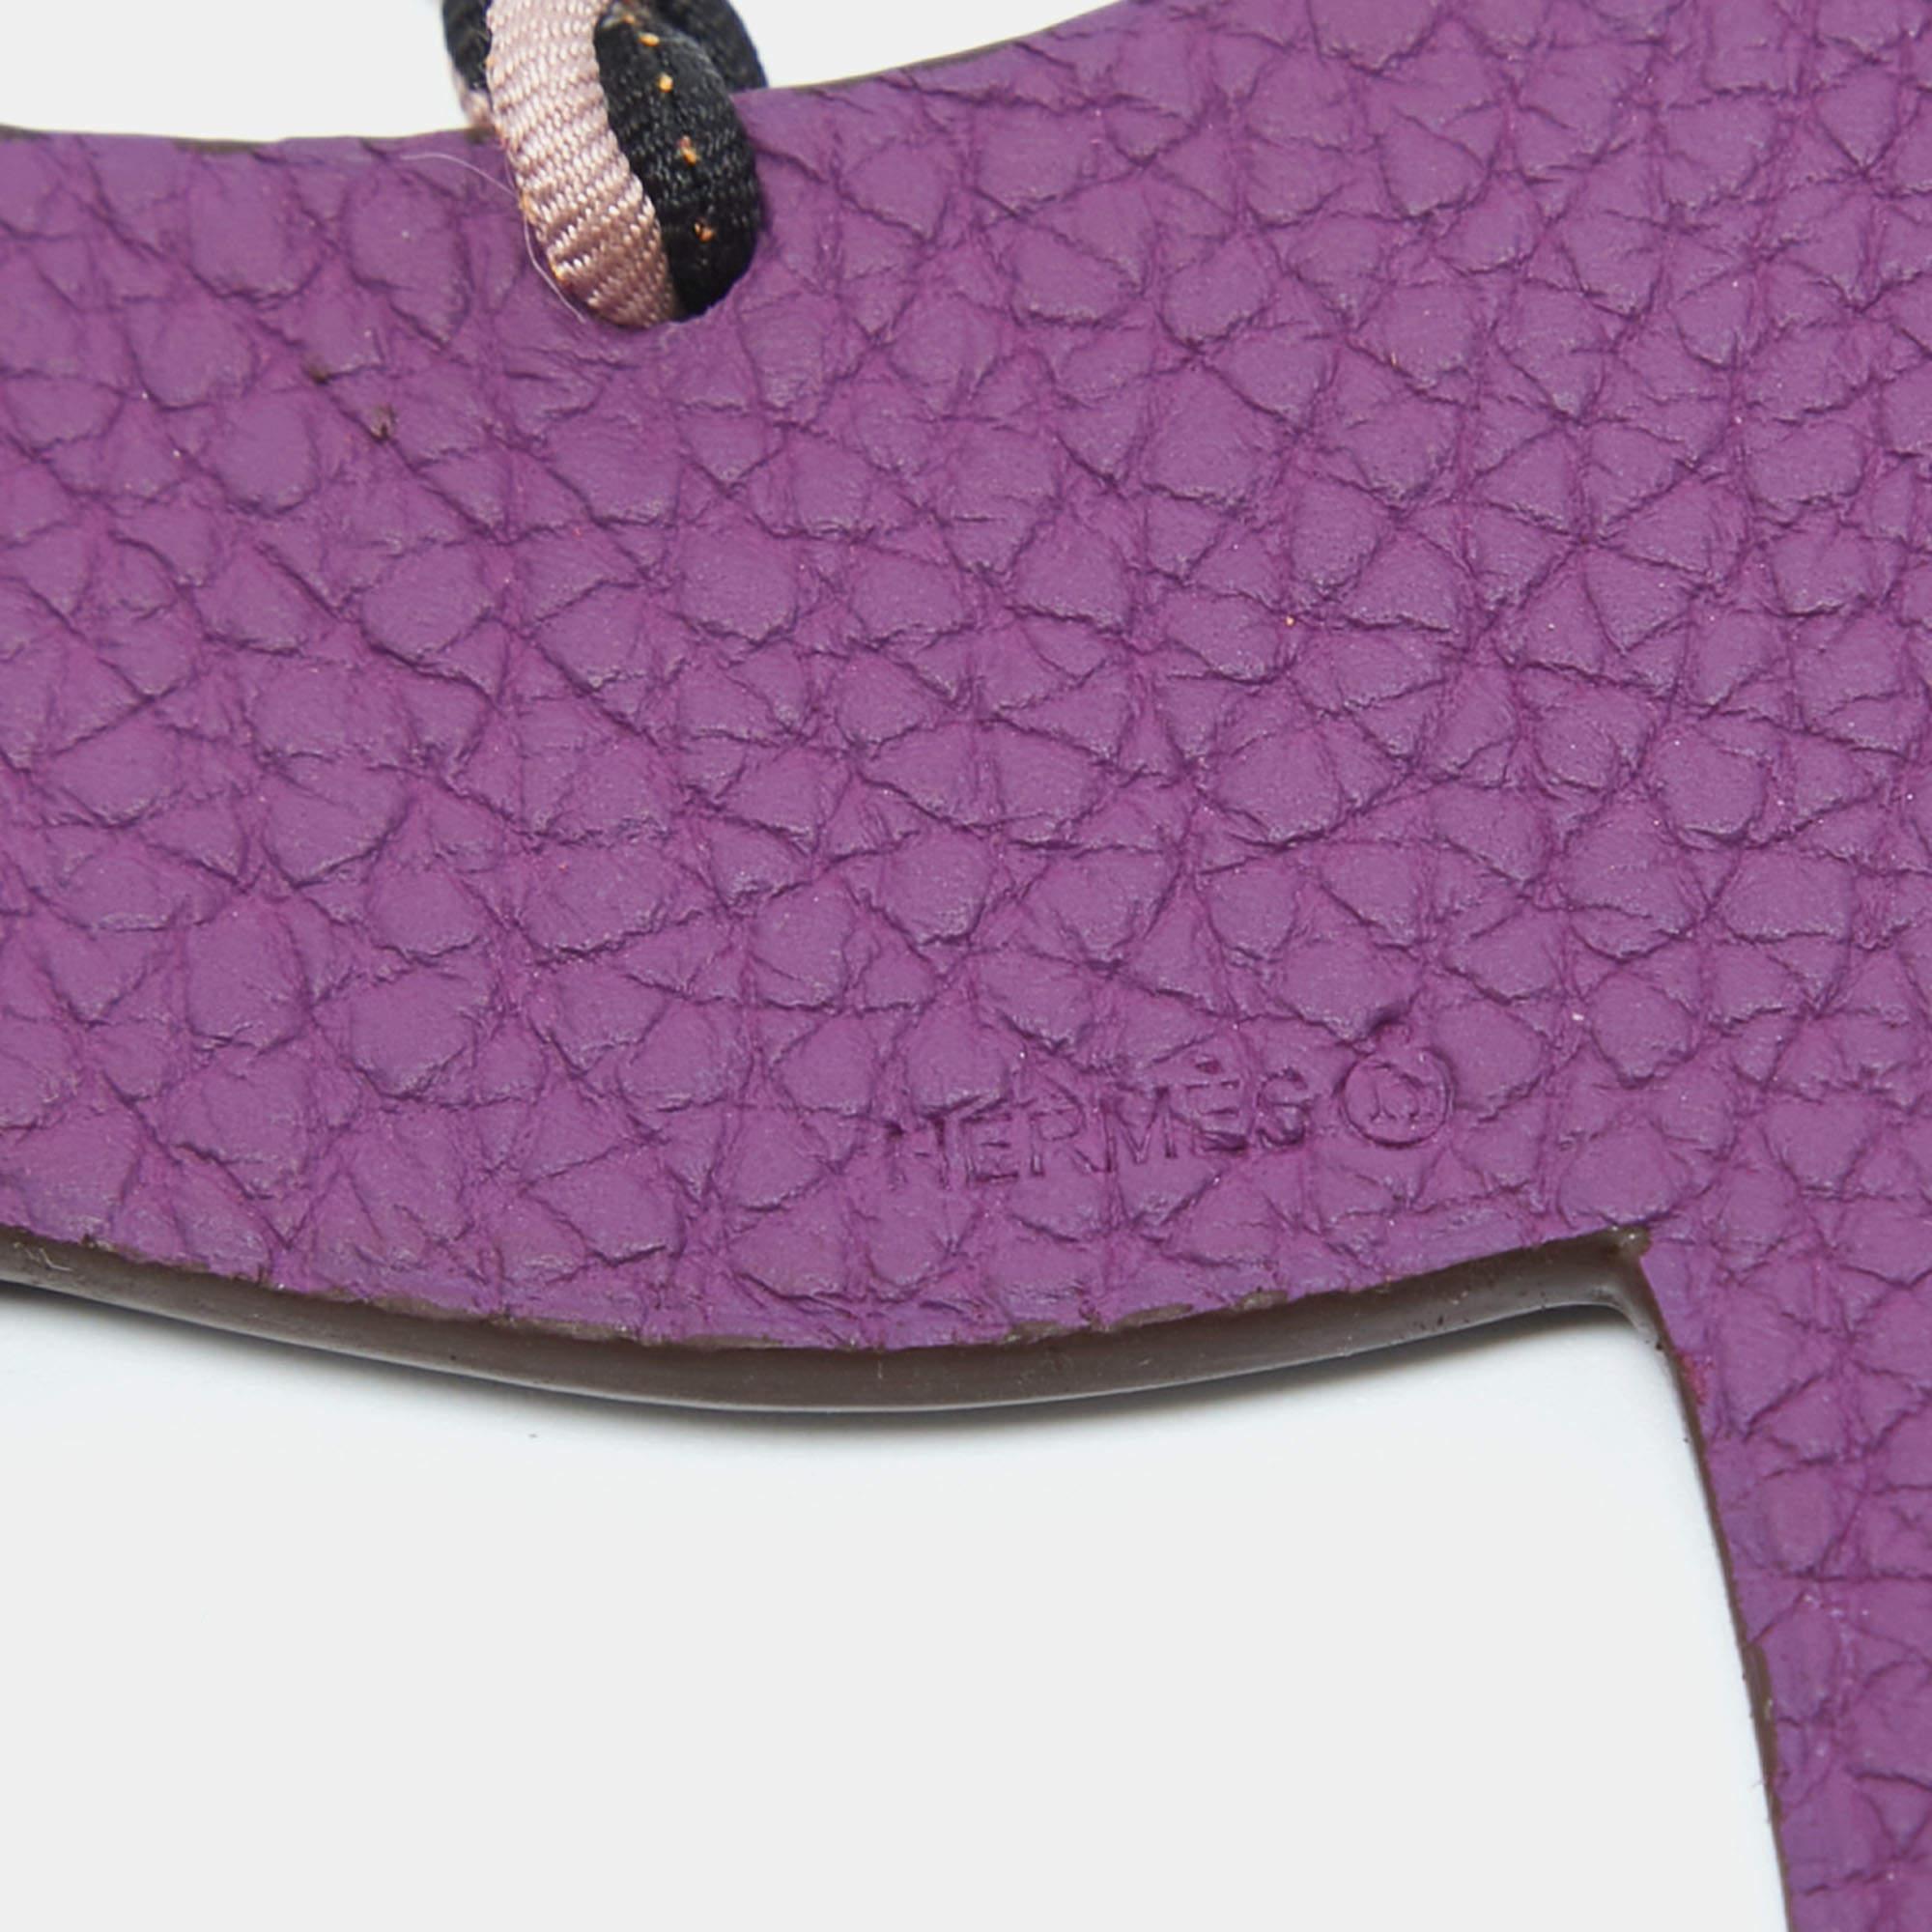 Taschenanhänger bieten eine spielerische Art, Ihre Hermès Designertaschen zu schmücken. Diese Kreation von Hermès kann auch an Ihren Schlüsseln befestigt werden.

